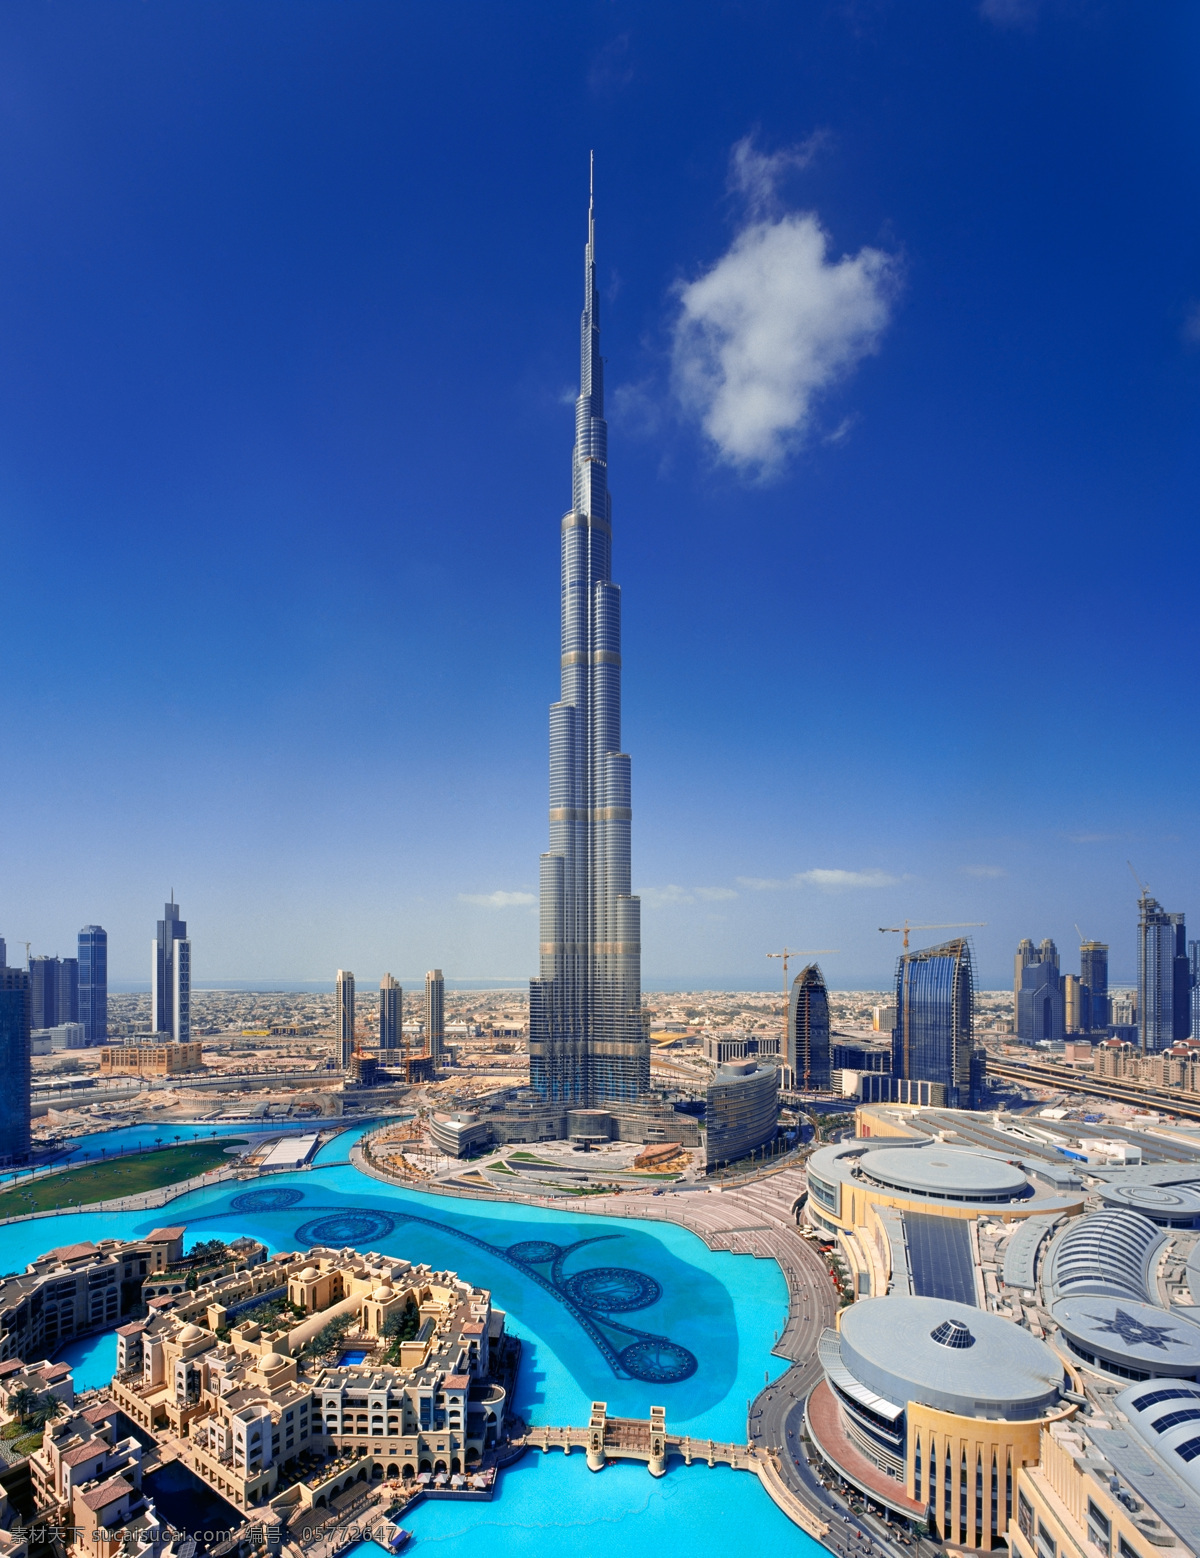 迪拜哈利法塔 哈利法塔 迪拜高楼大厦 摩天大楼 迪拜风景 美丽风景 城市风景 城市风光 环境家居 蓝色